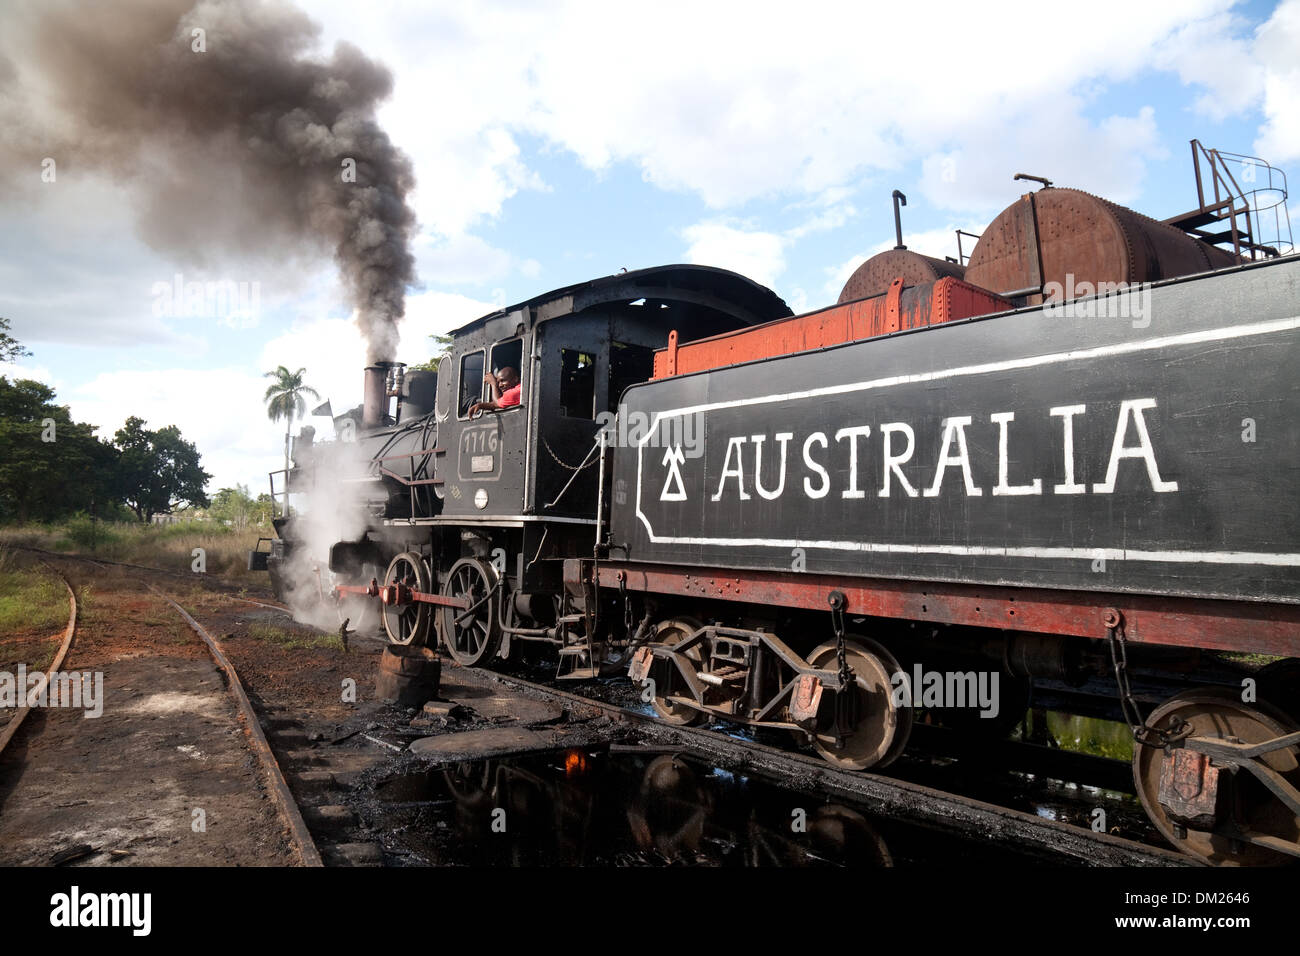 Groupe moteur à vapeur, dans un village appelé l'Australie, de Cuba, des Caraïbes Banque D'Images